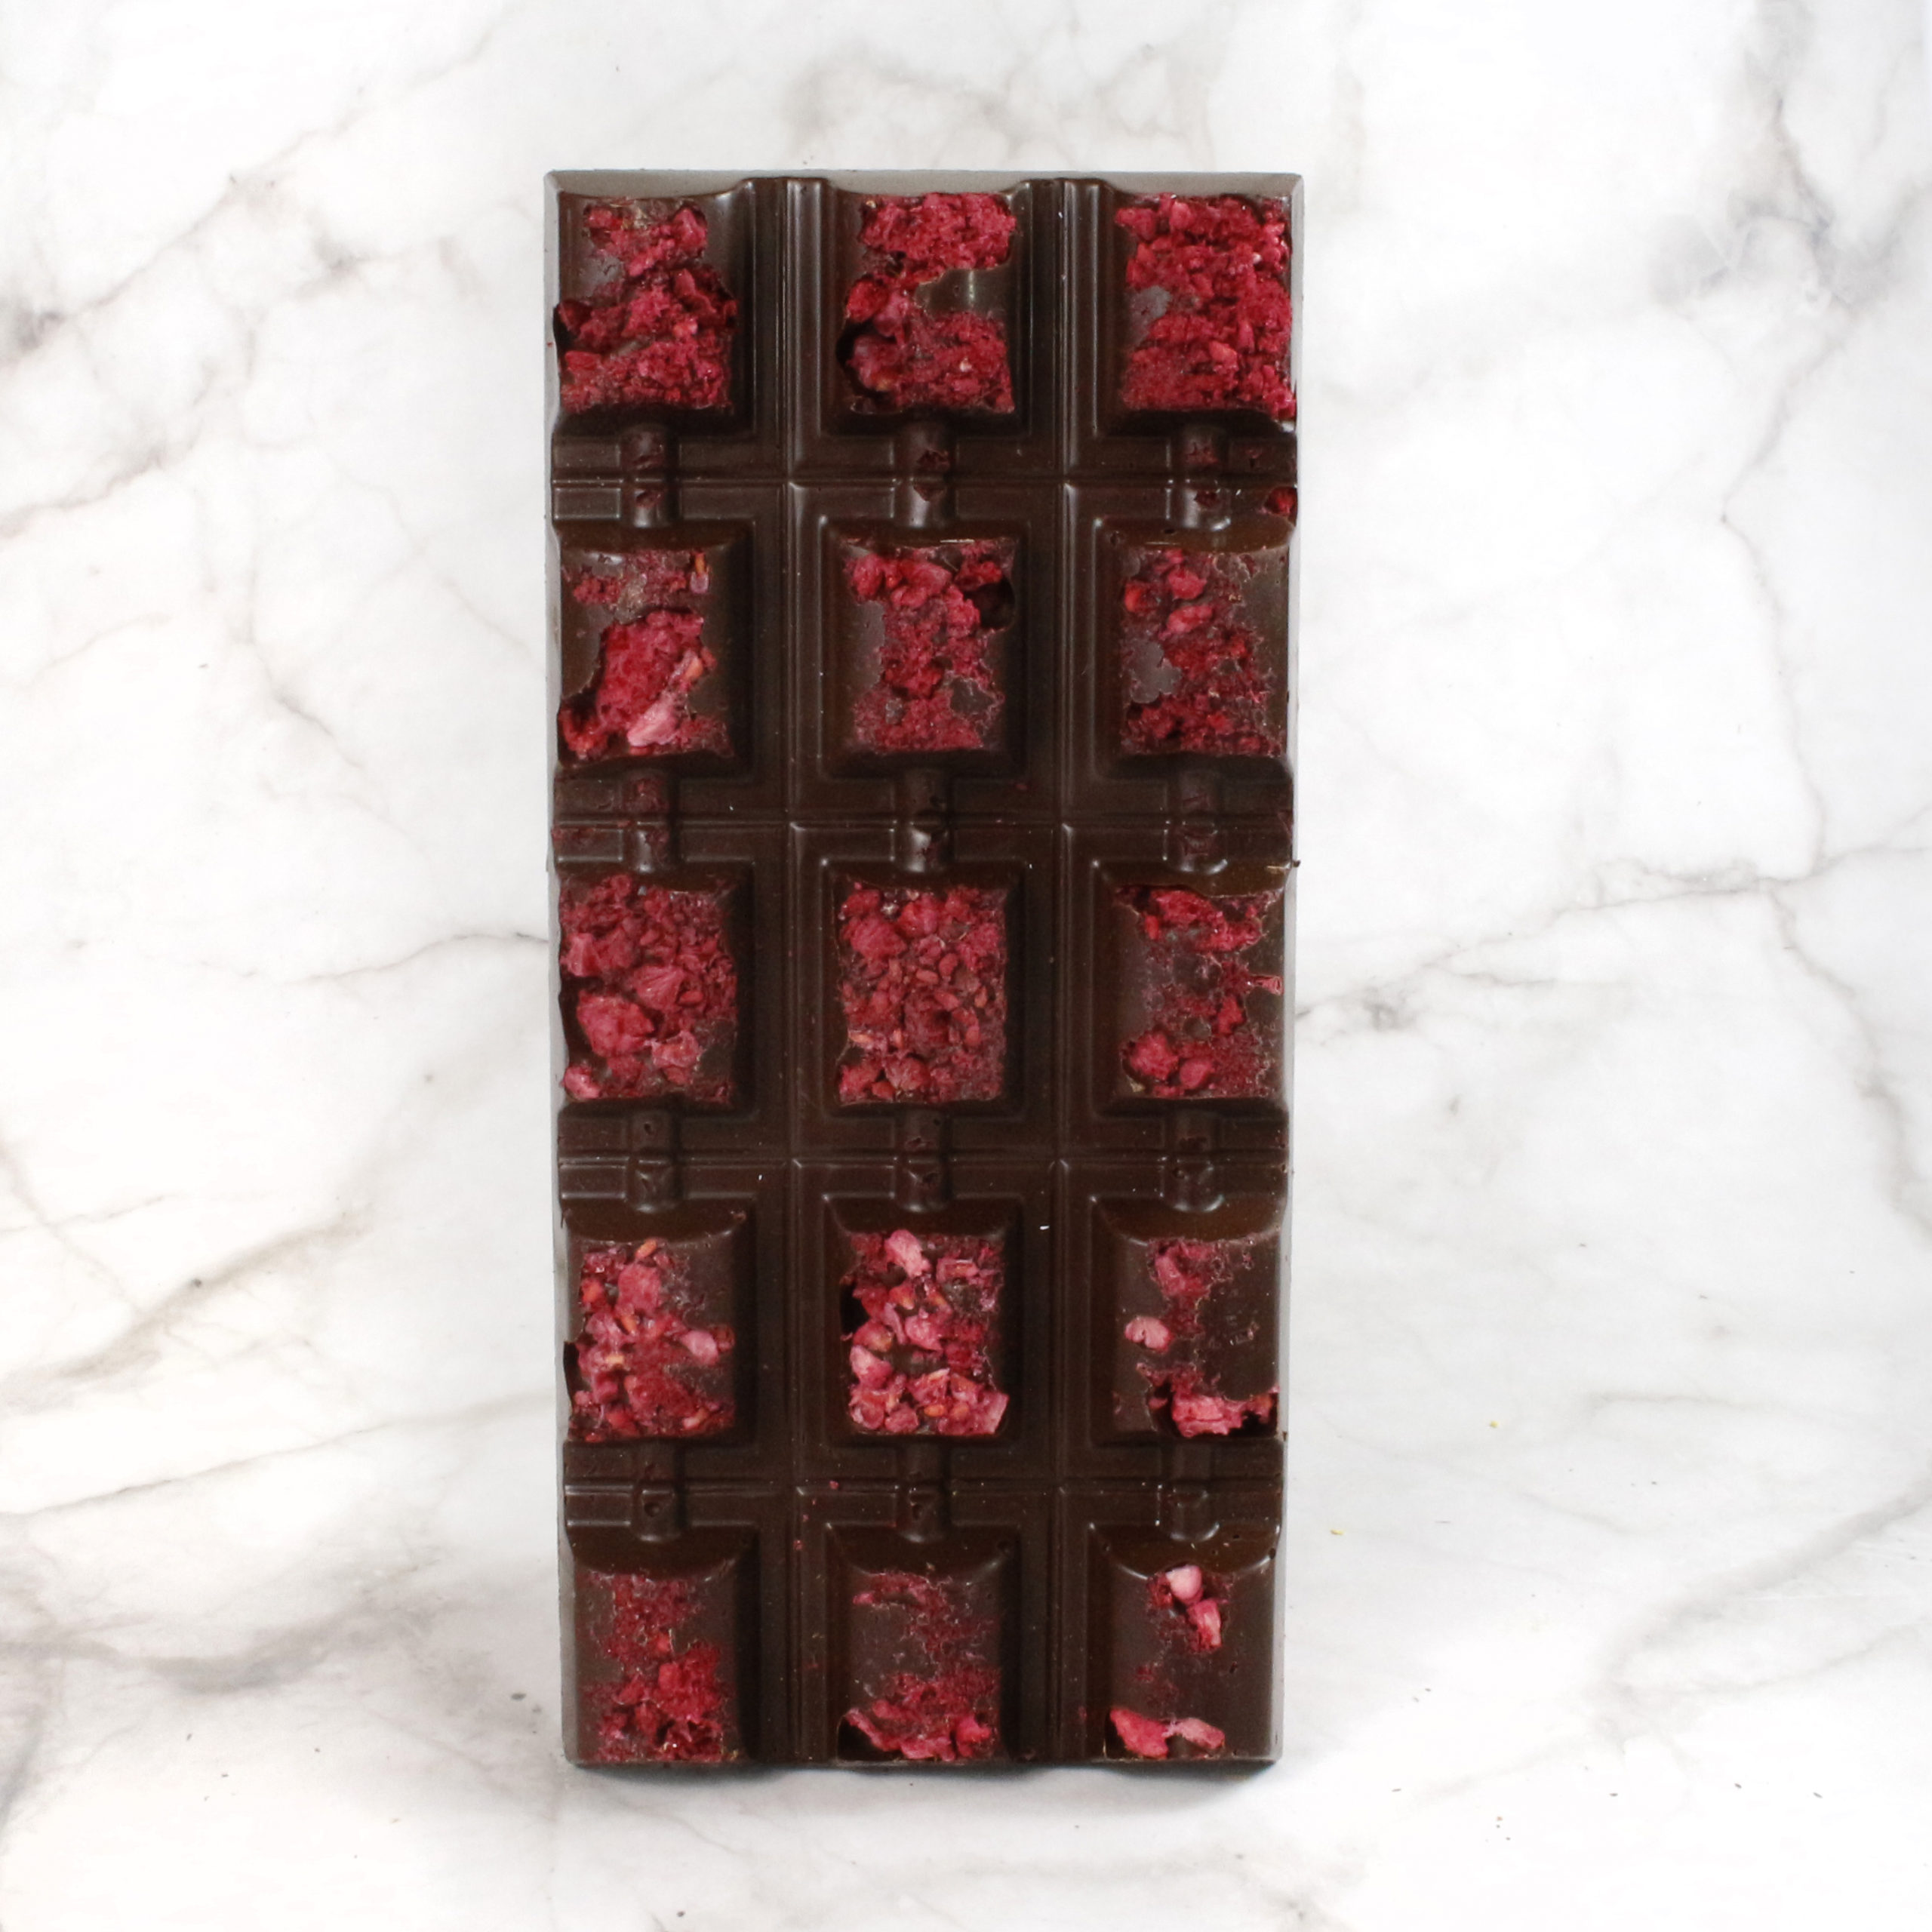 Chocolove Dark Chocolate, Raspberries | Chocolate | New 